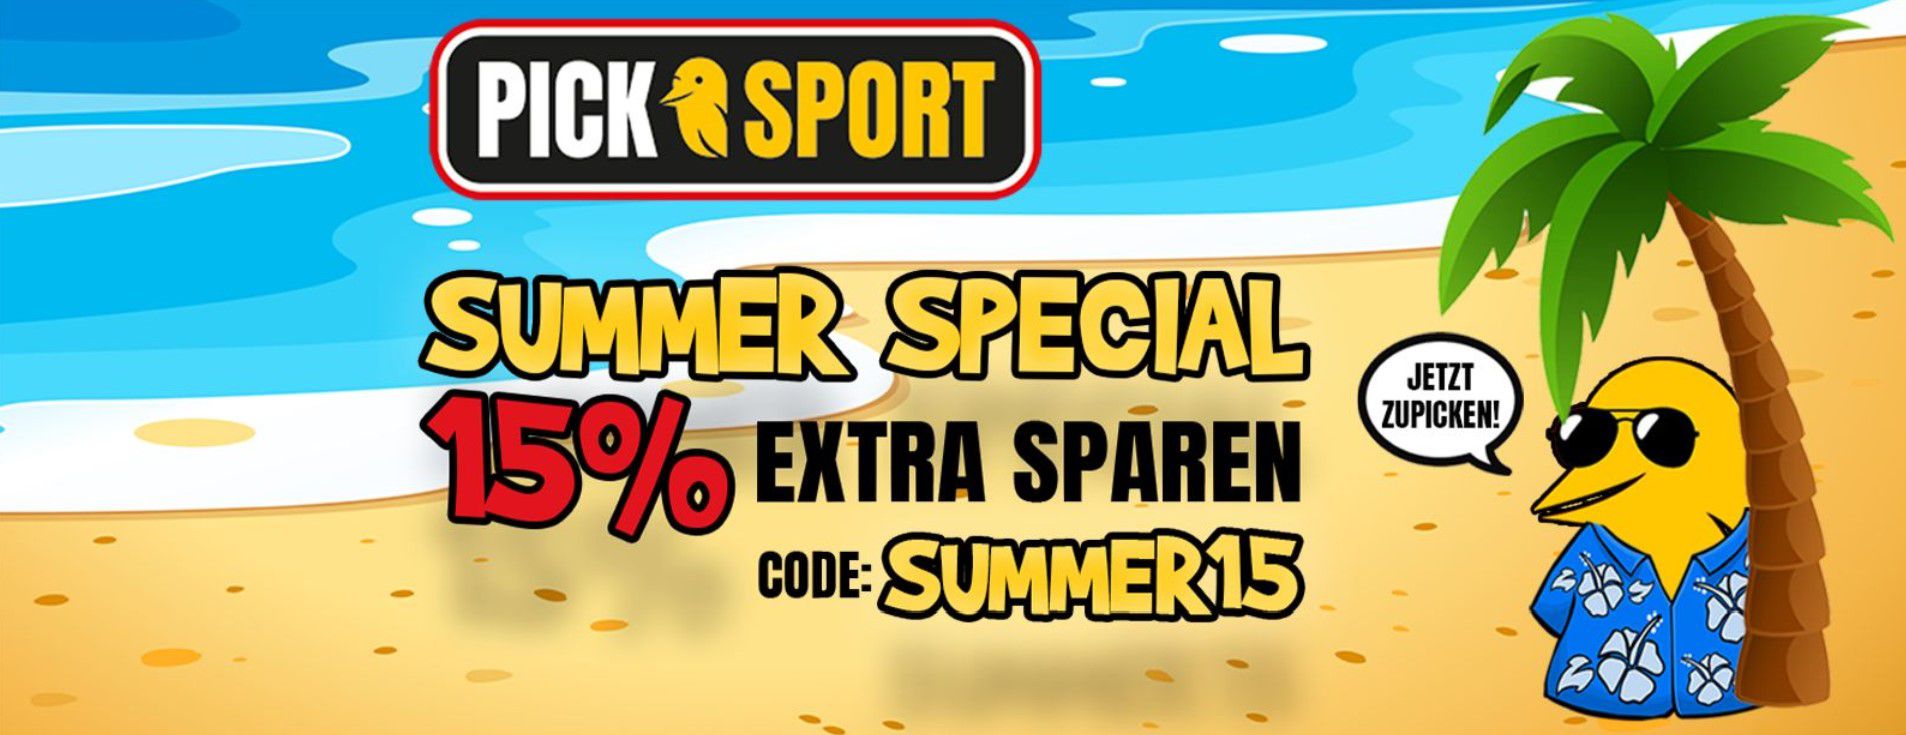 Picksport Summer Sale mit 15% extra Rabatt auf ausgewählte Neuheiten